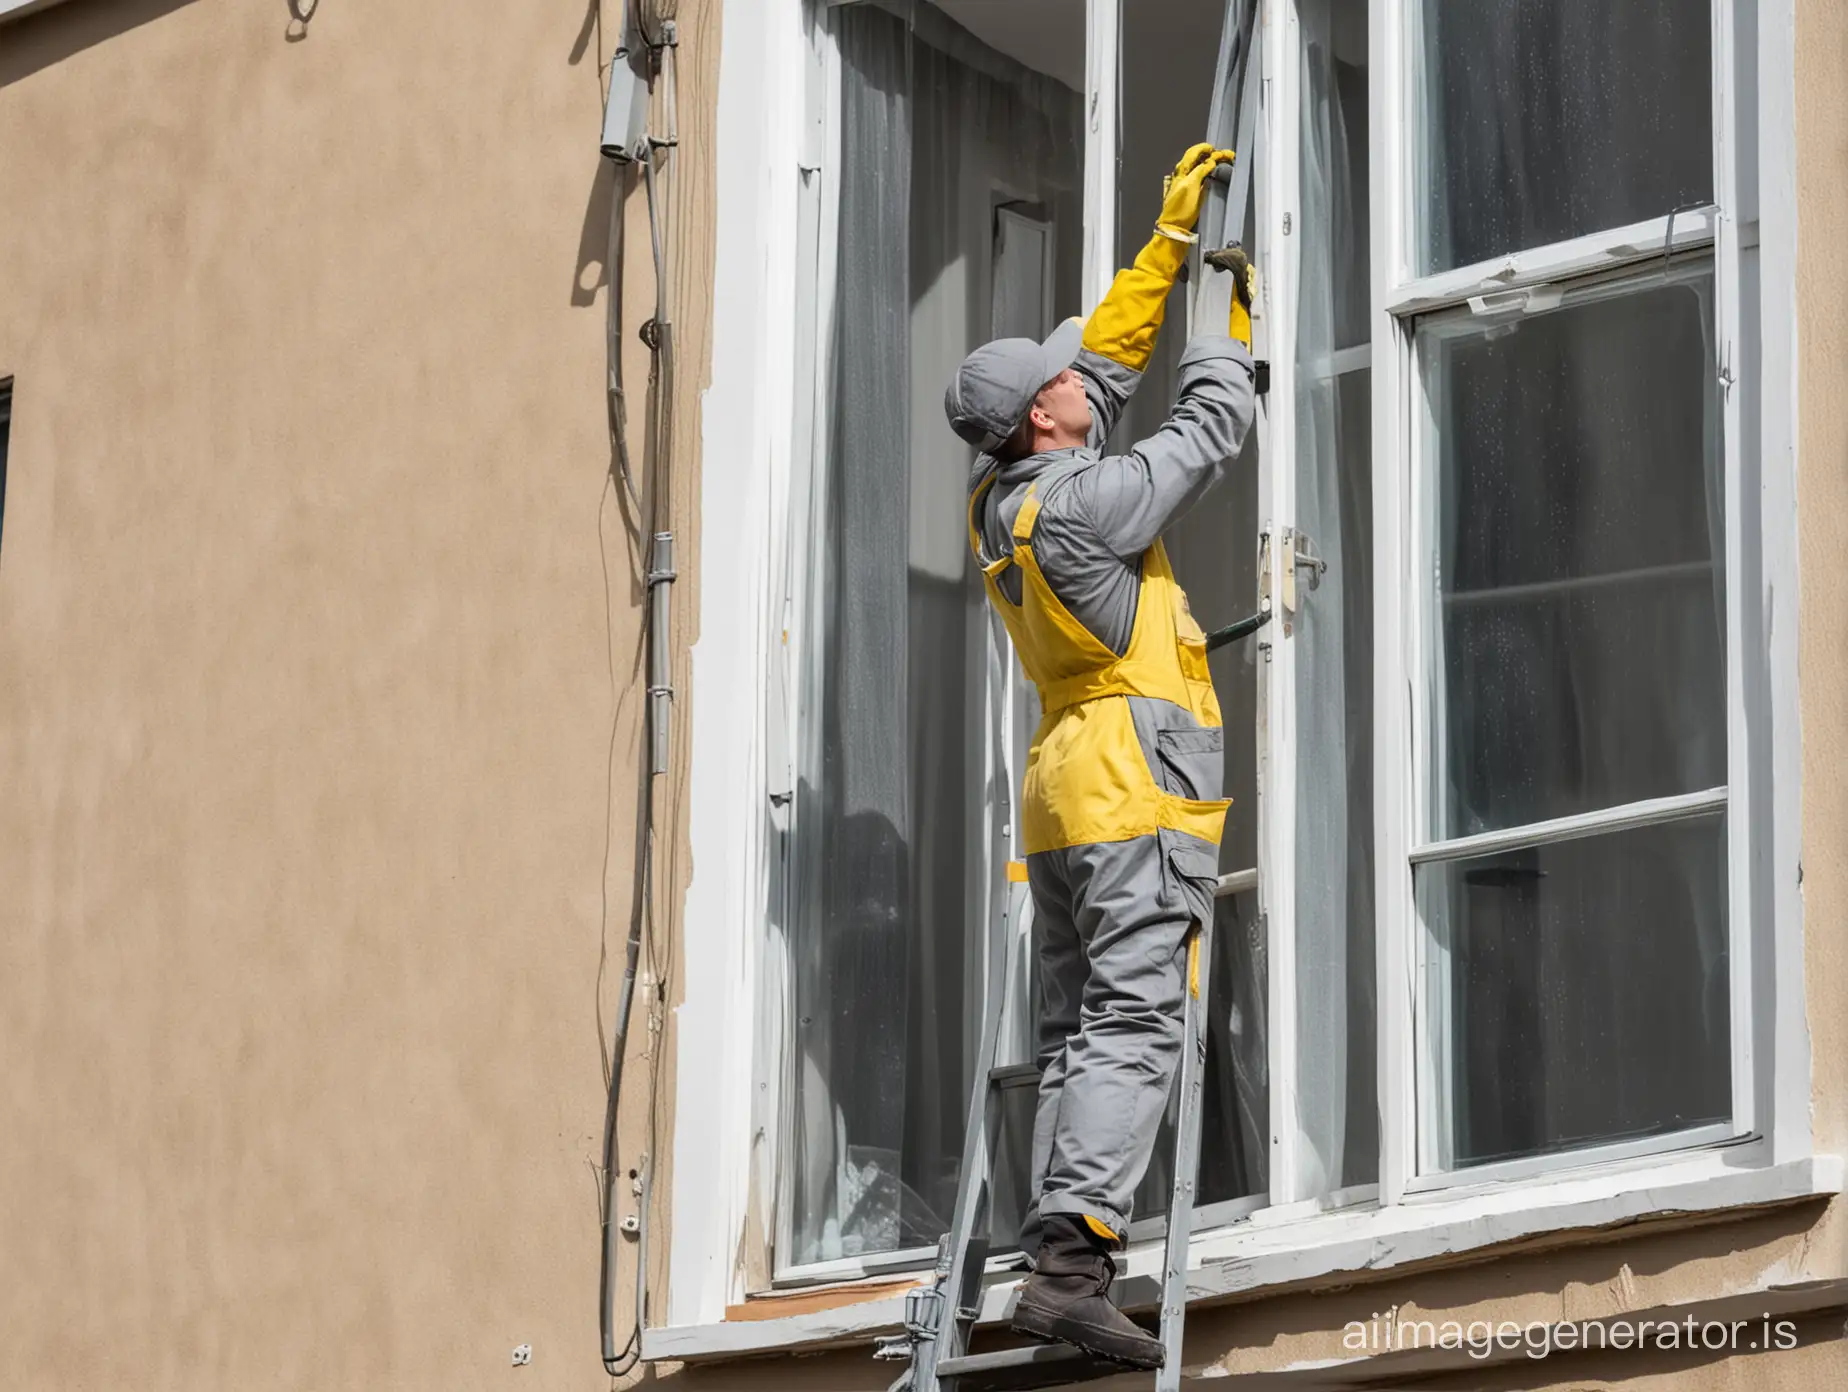 мужчина на лестнице в полный рост. моет окно снаружи дома. одет в спецодежду серого цвета. на руках желтые перчатки